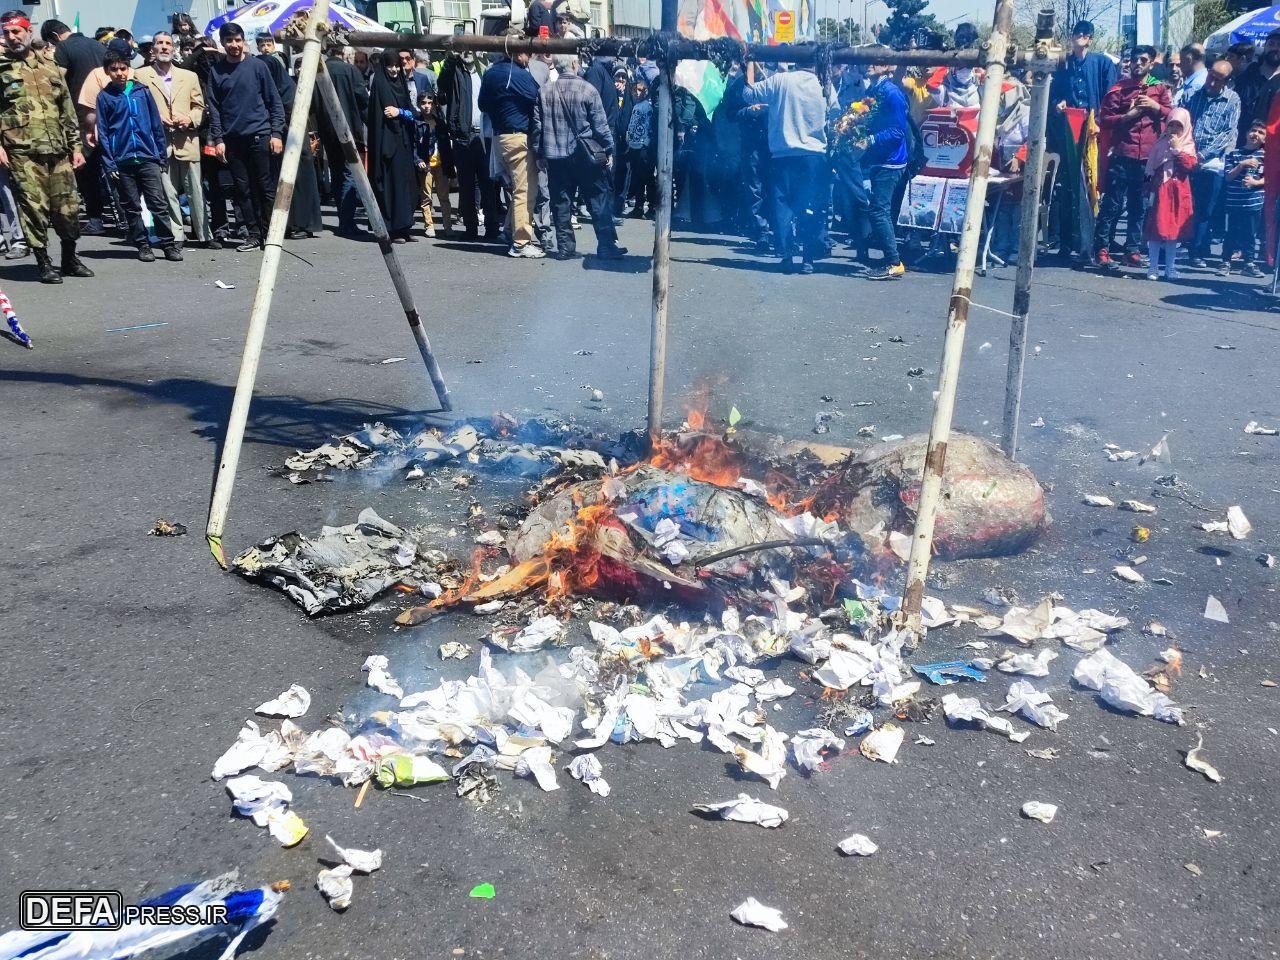 مجسمه نتانیاهو سوزانده شد